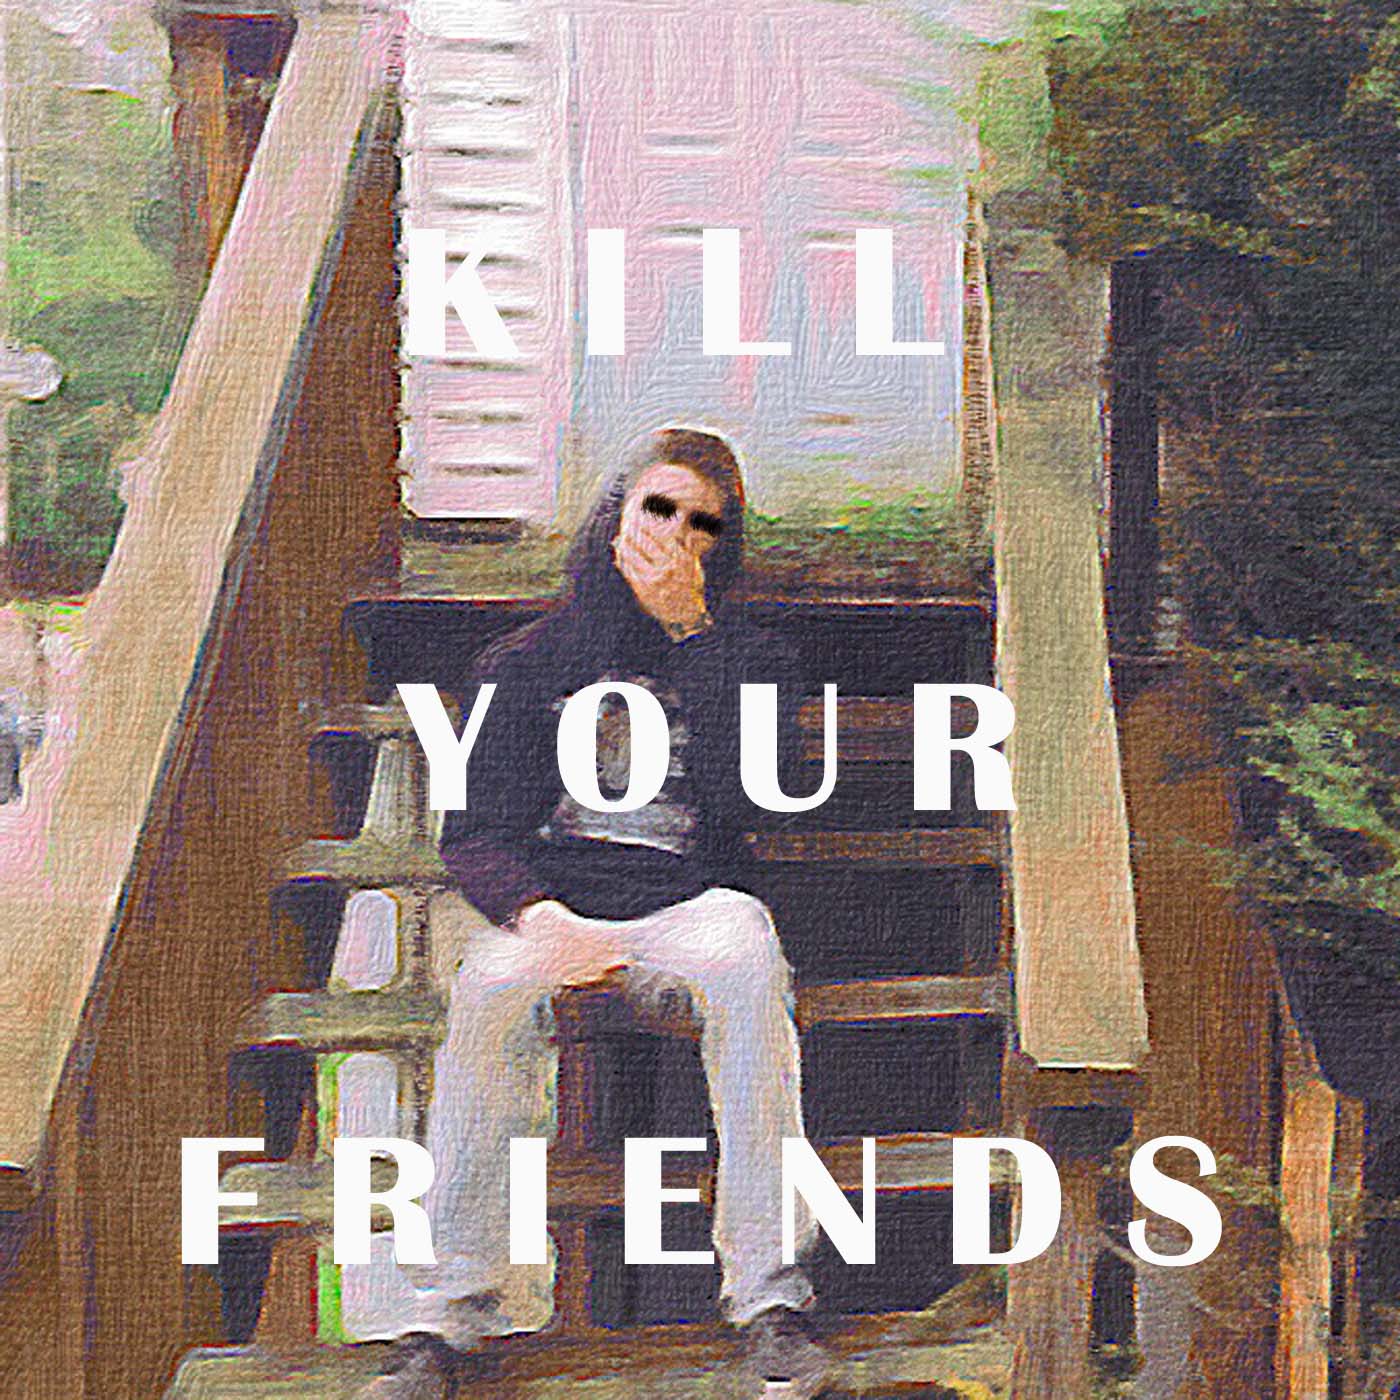 Clay Drops His Debut Mixtape - "Kill Your Friends"